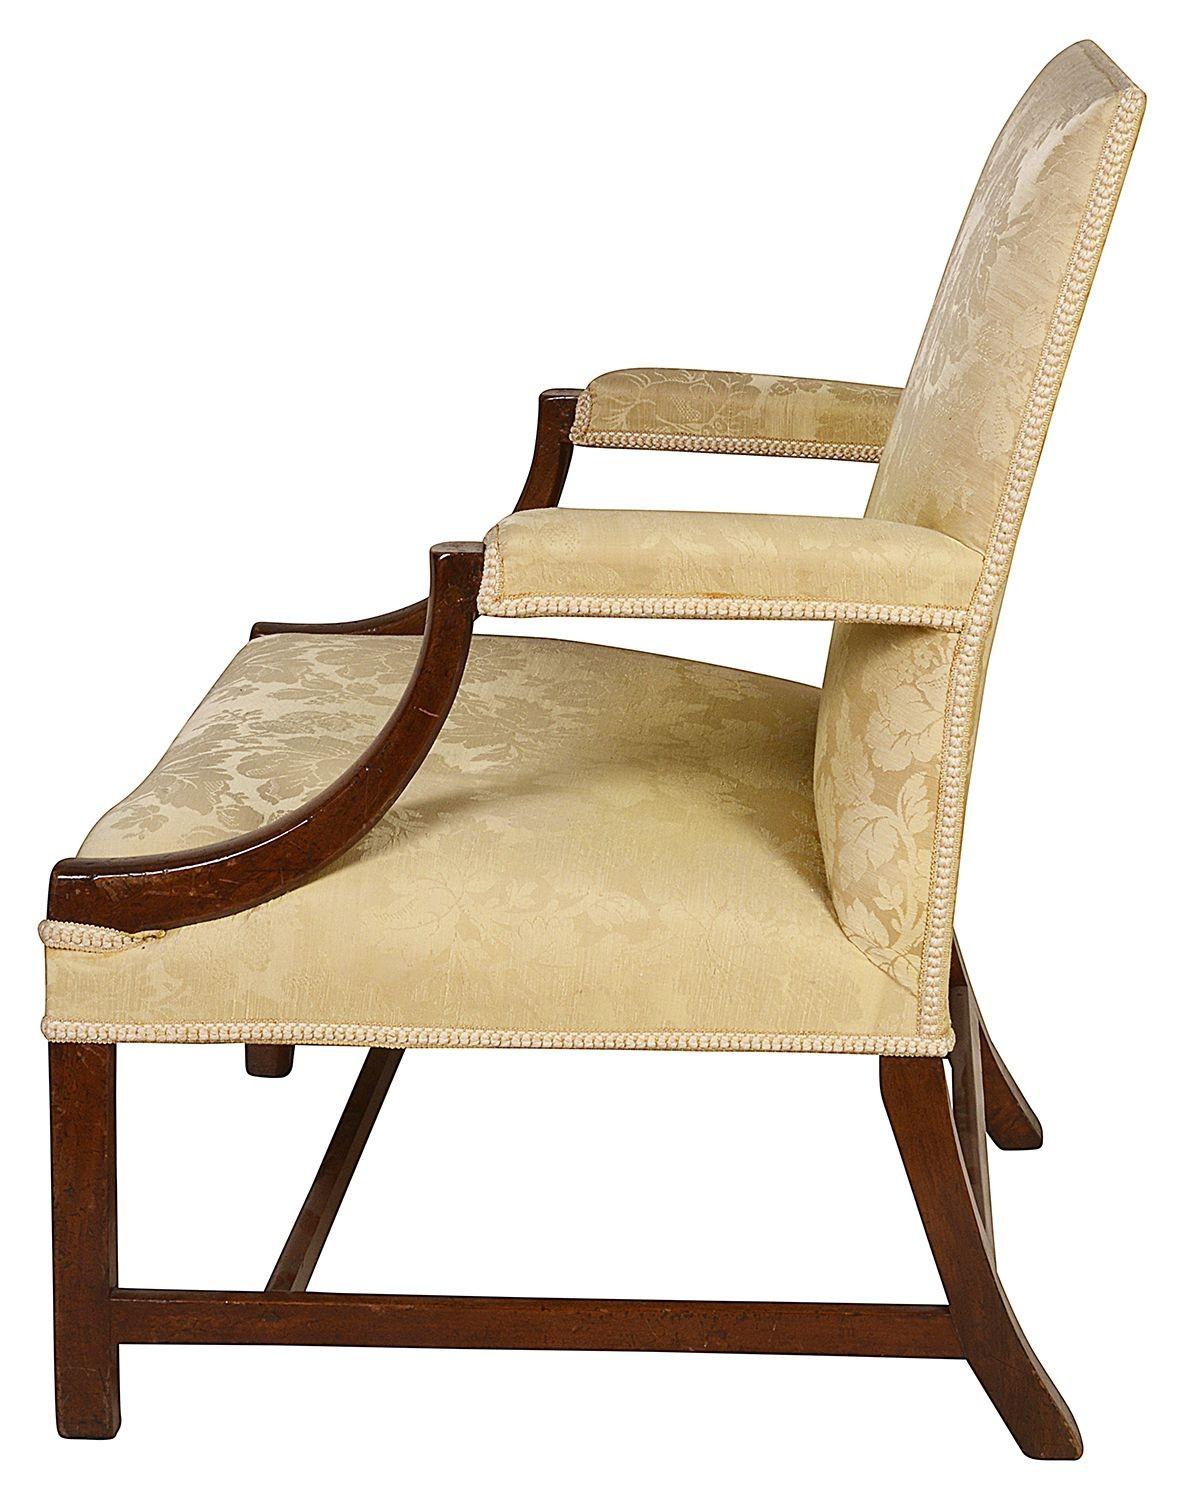 Un fauteuil Gainsborough en acajou de bonne qualité, datant du 18e siècle. Le dossier, l'assise et les accoudoirs sont en soie damassée jaune. Pieds de section carrée, unis par des traverses en H.

Lot 67 61312 DNCKZ